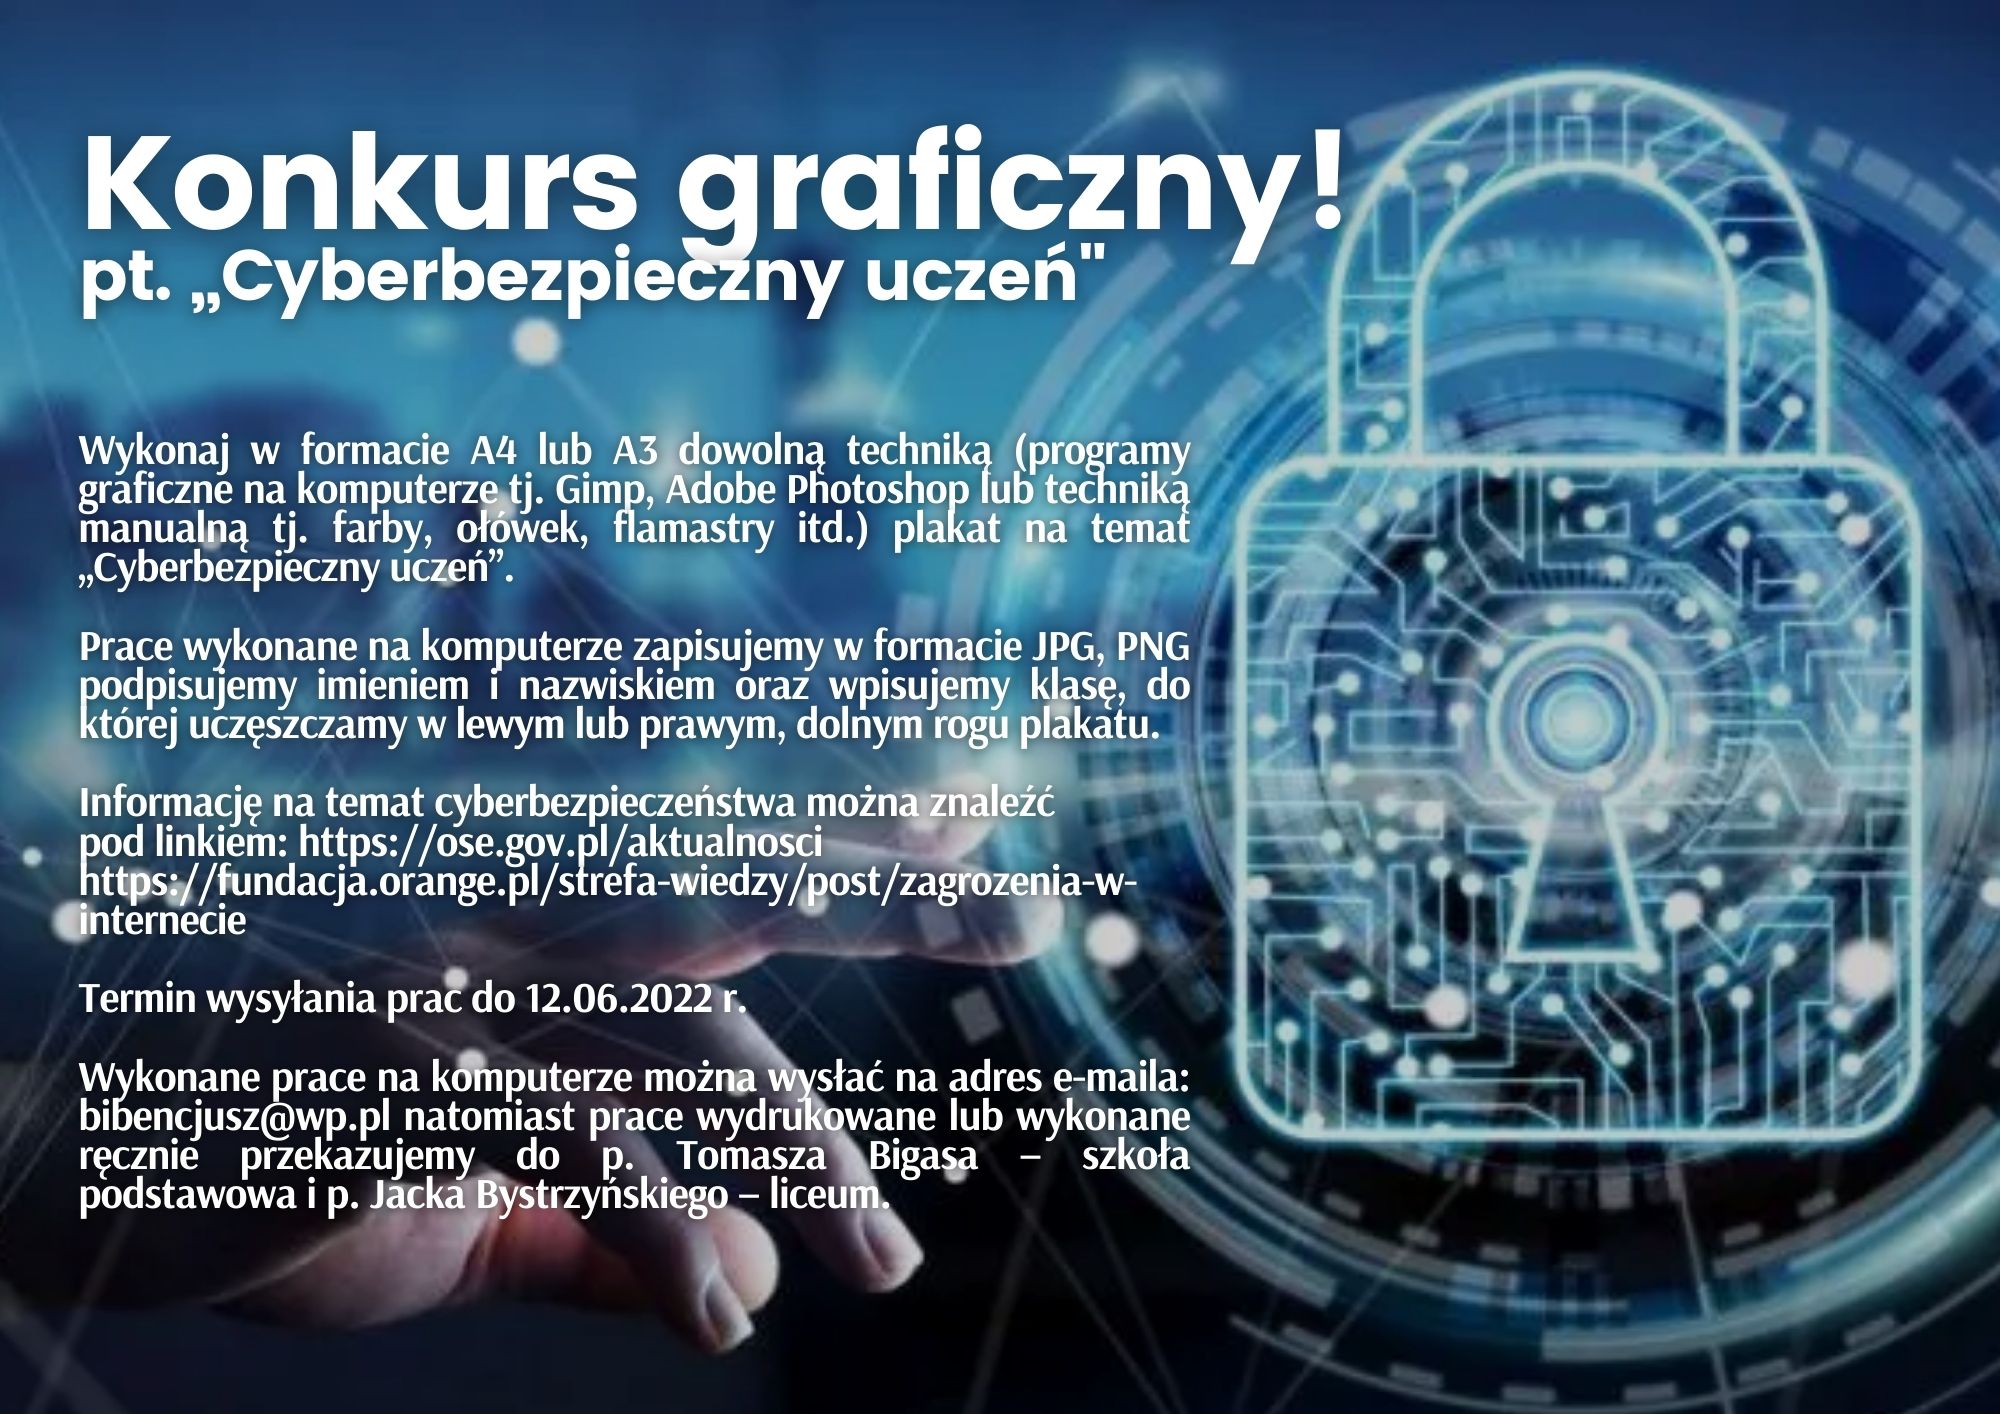 Konkurs graficzny pt. „Cyberbezpieczny uczeń”